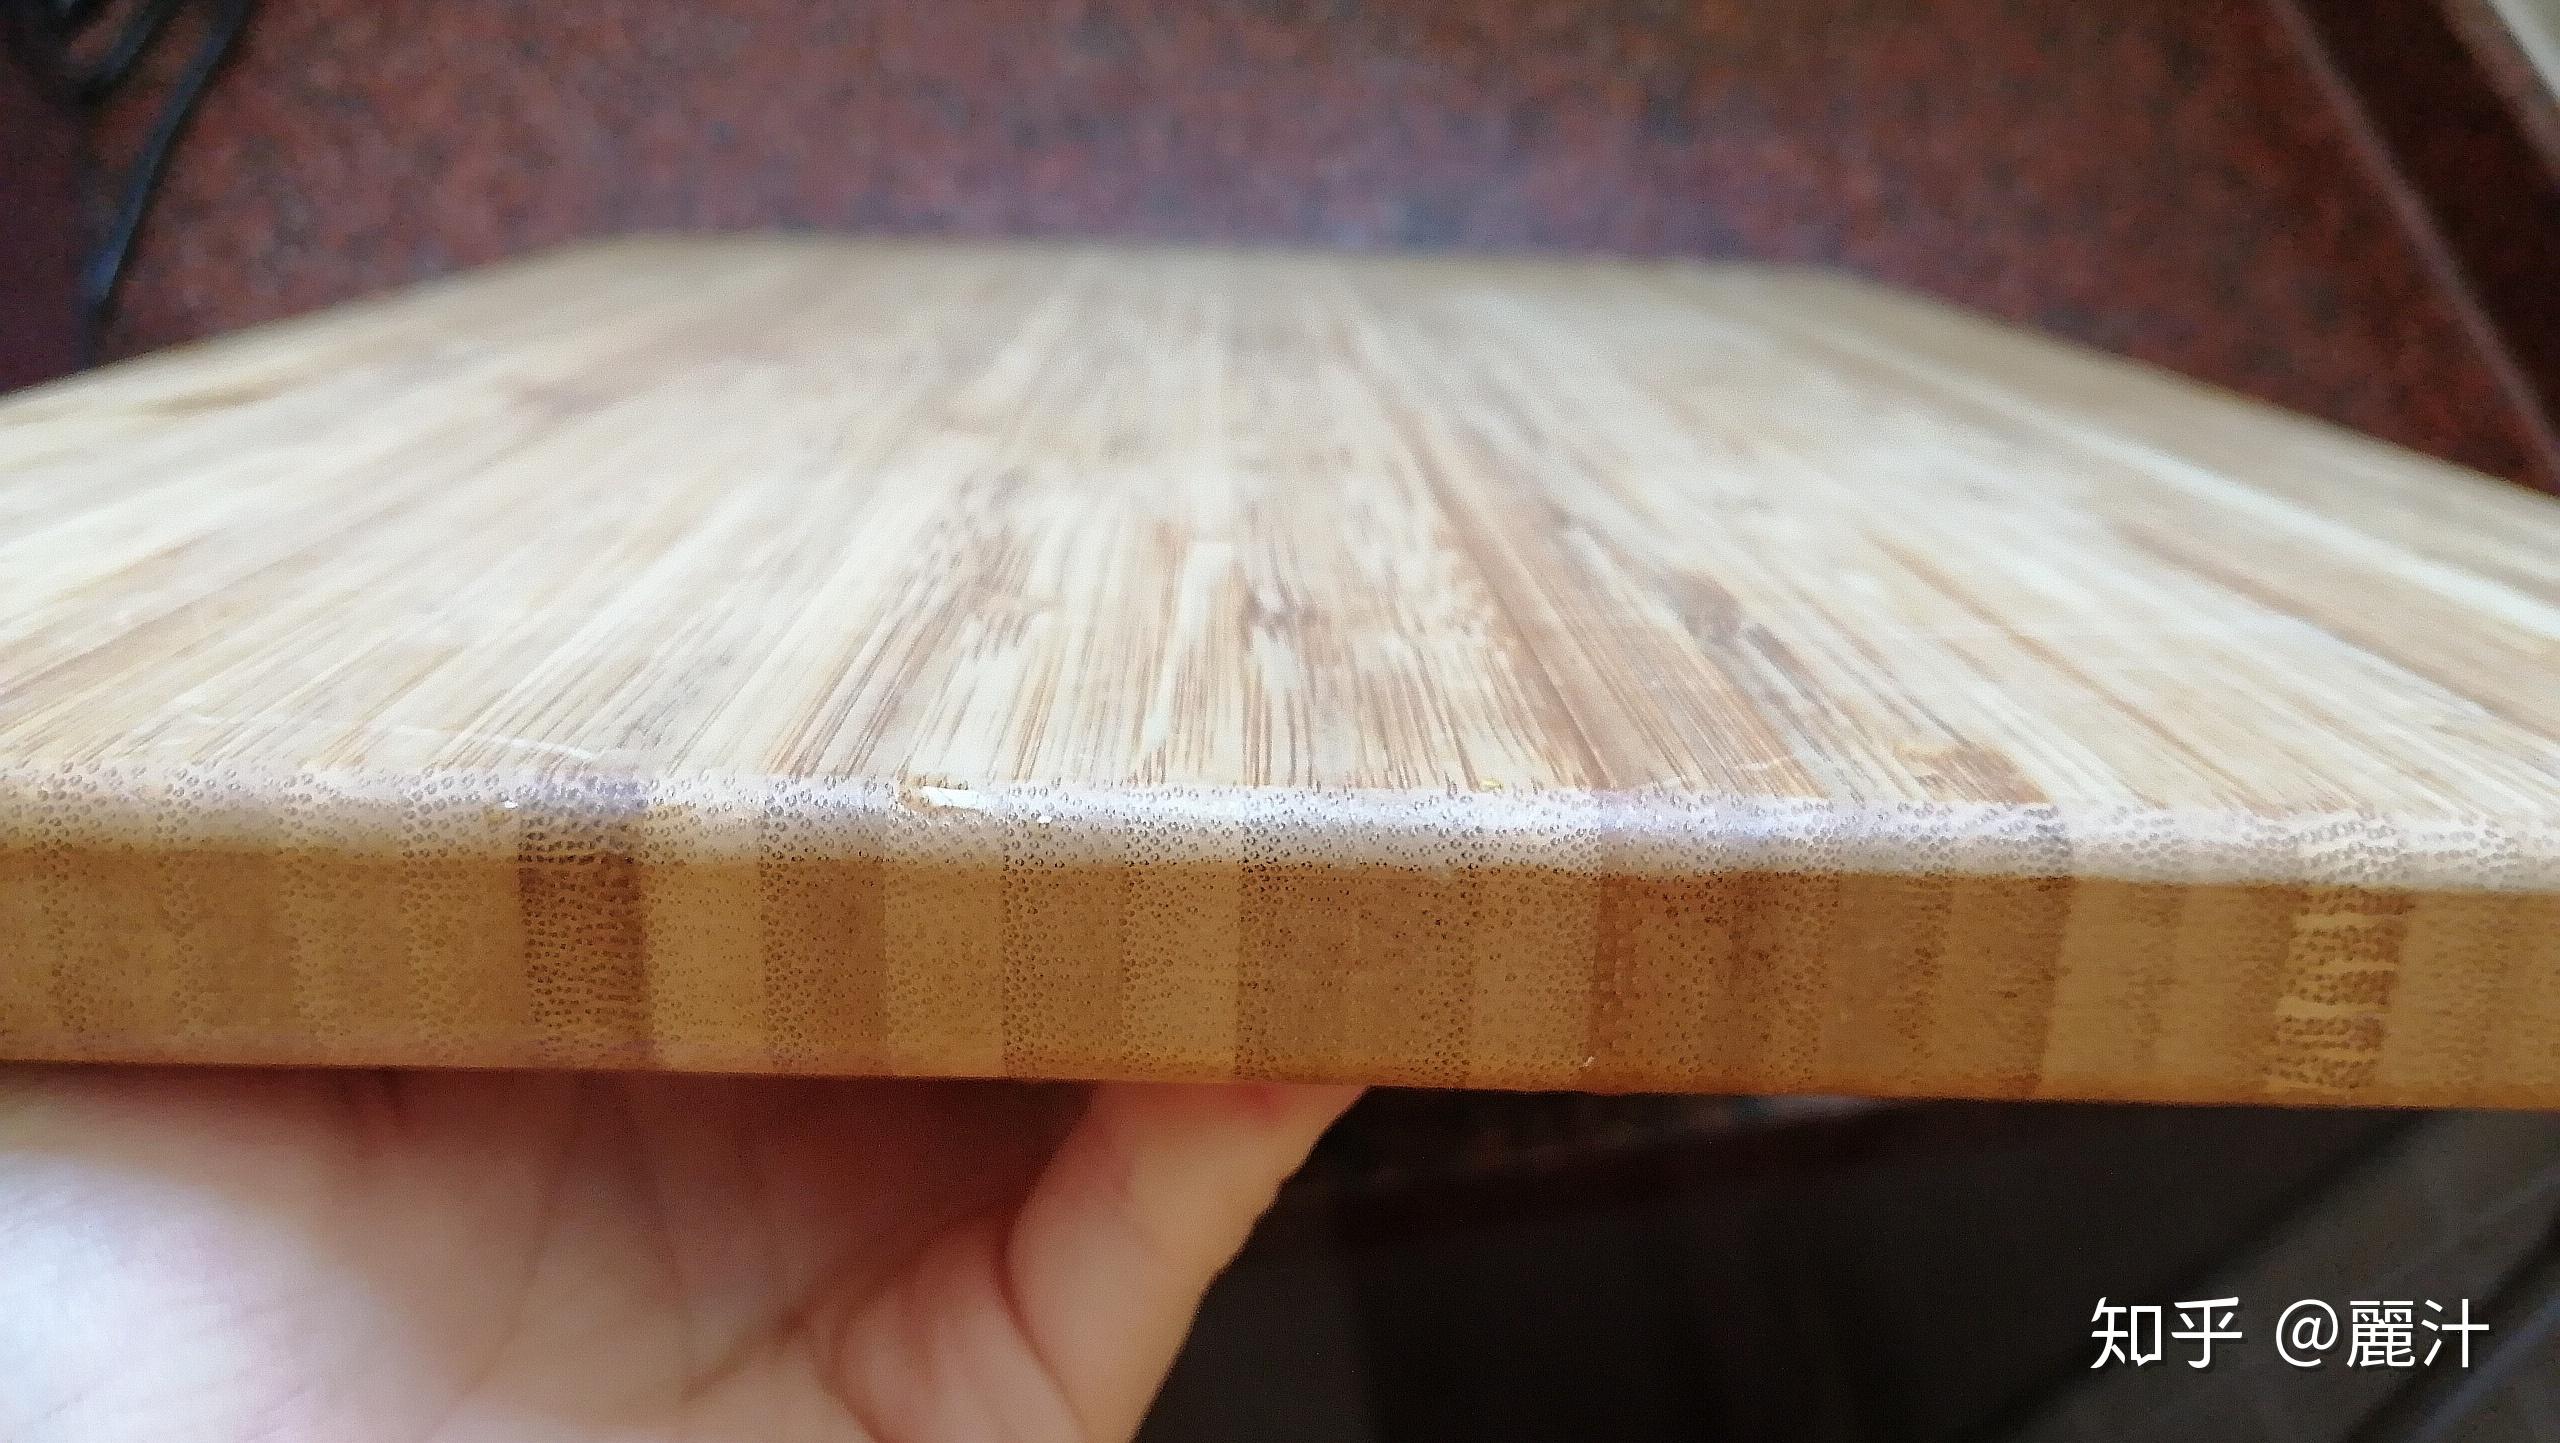 厨房菜板 竹子砧板切菜板 工艺案板可定制 竹木菜板水果案板-阿里巴巴